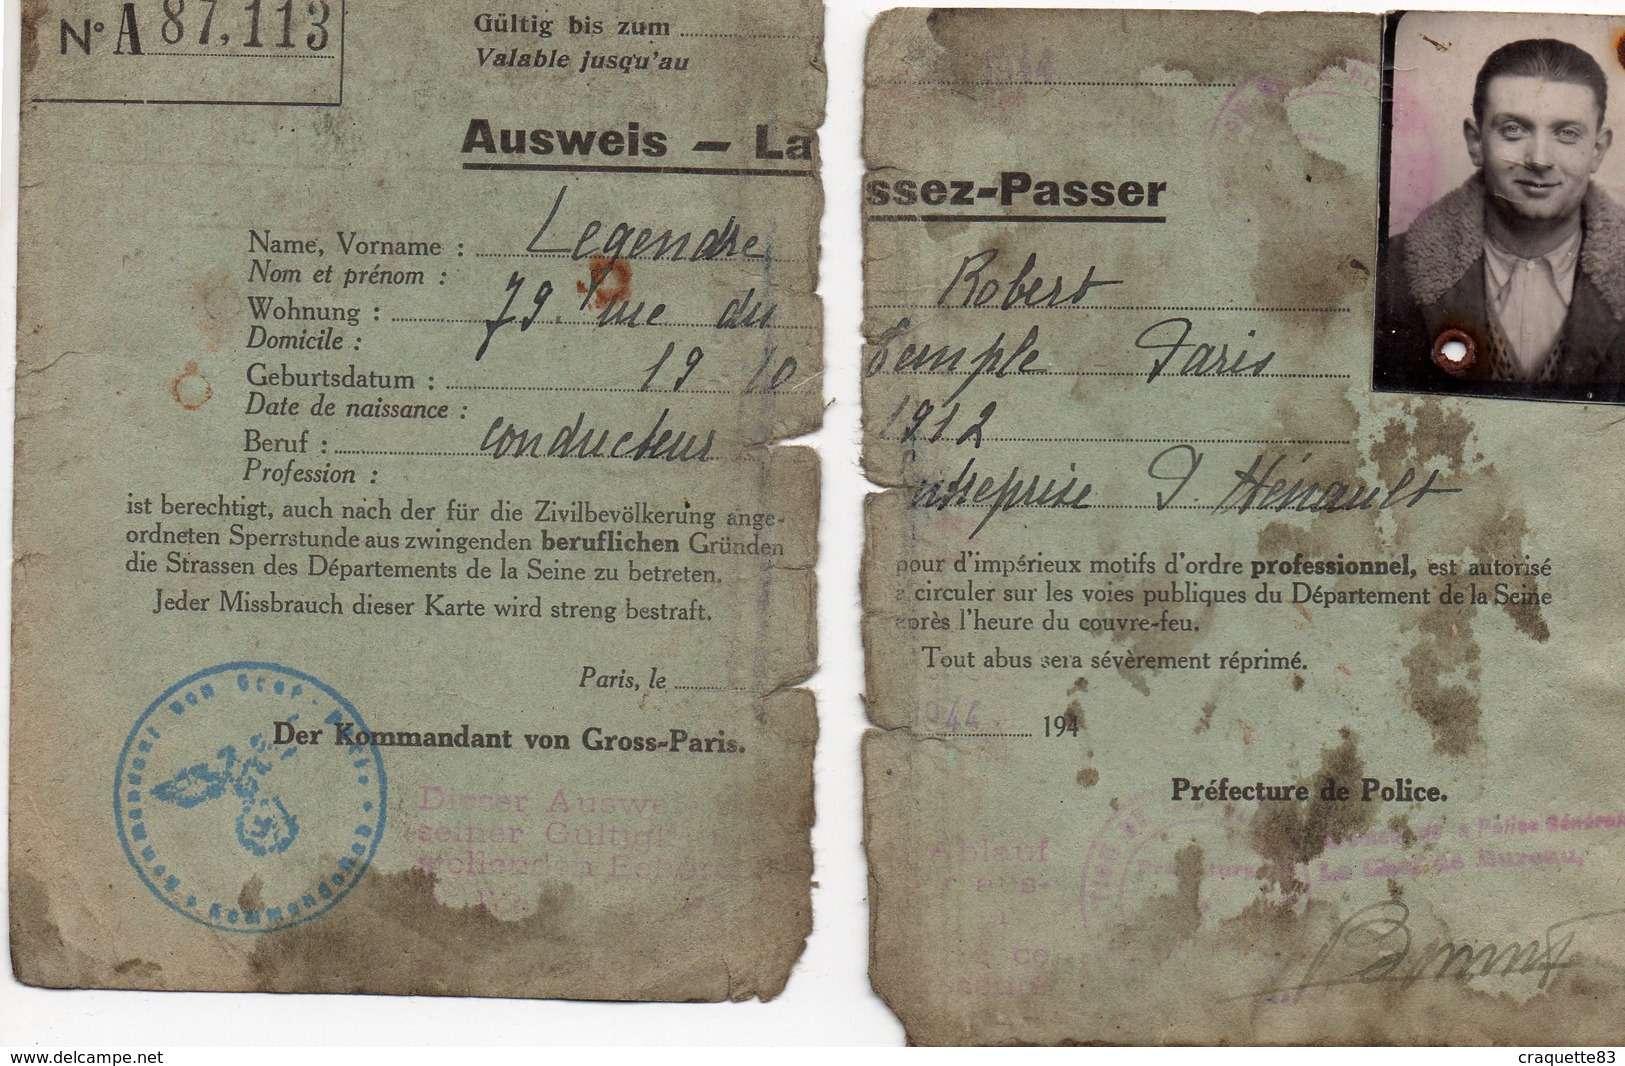 AUSWEIS-LAISSEZ-PASSER  N° A87.113  1944 PARIS - Documents